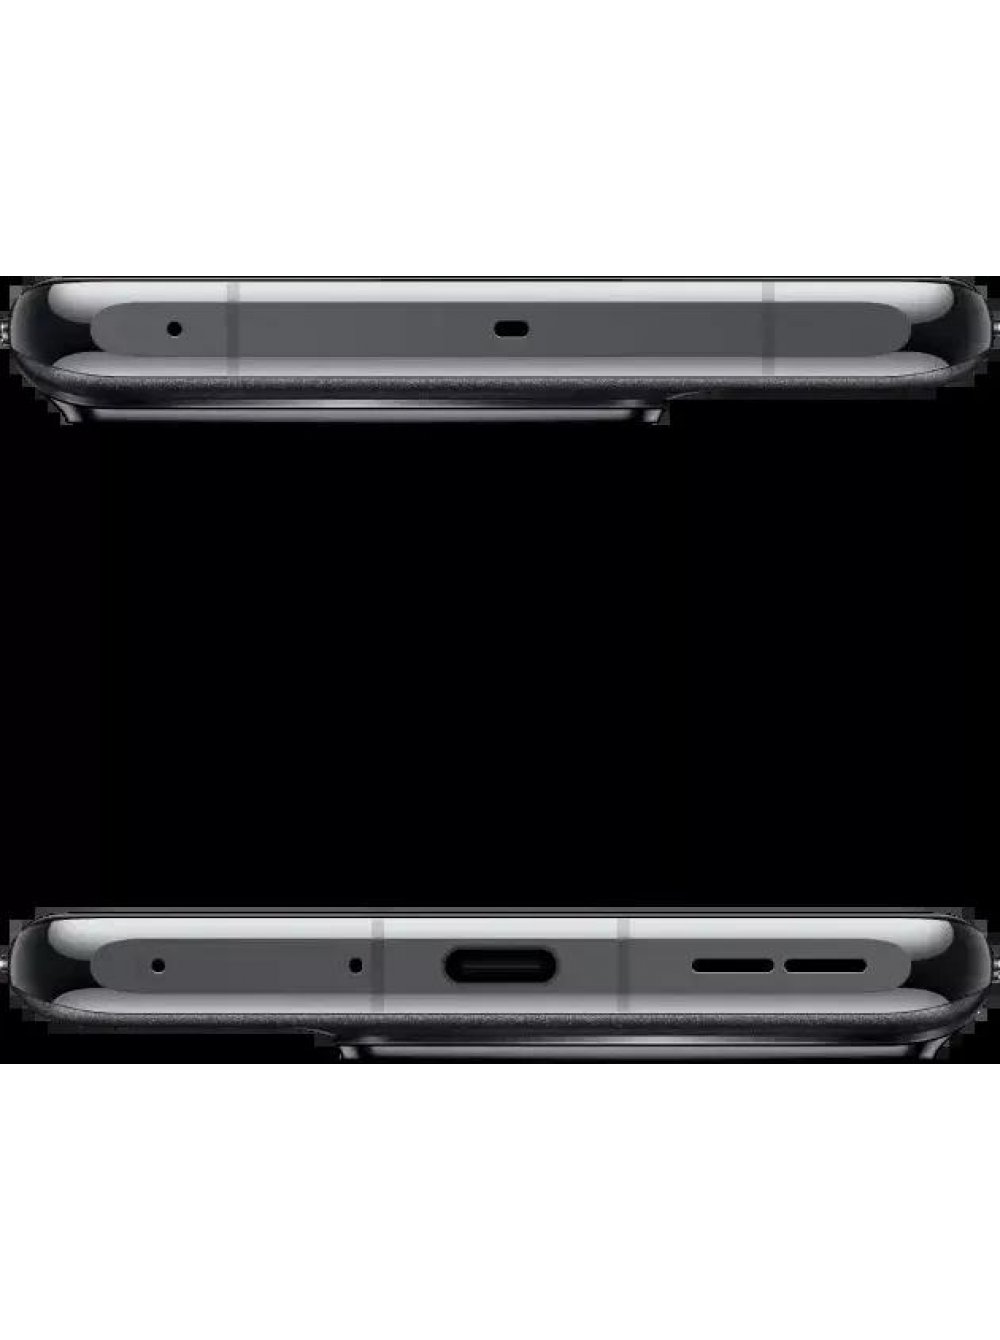 OnePlus 11 16GB/512GB китайская версия (черный) смартфон купить в Минске